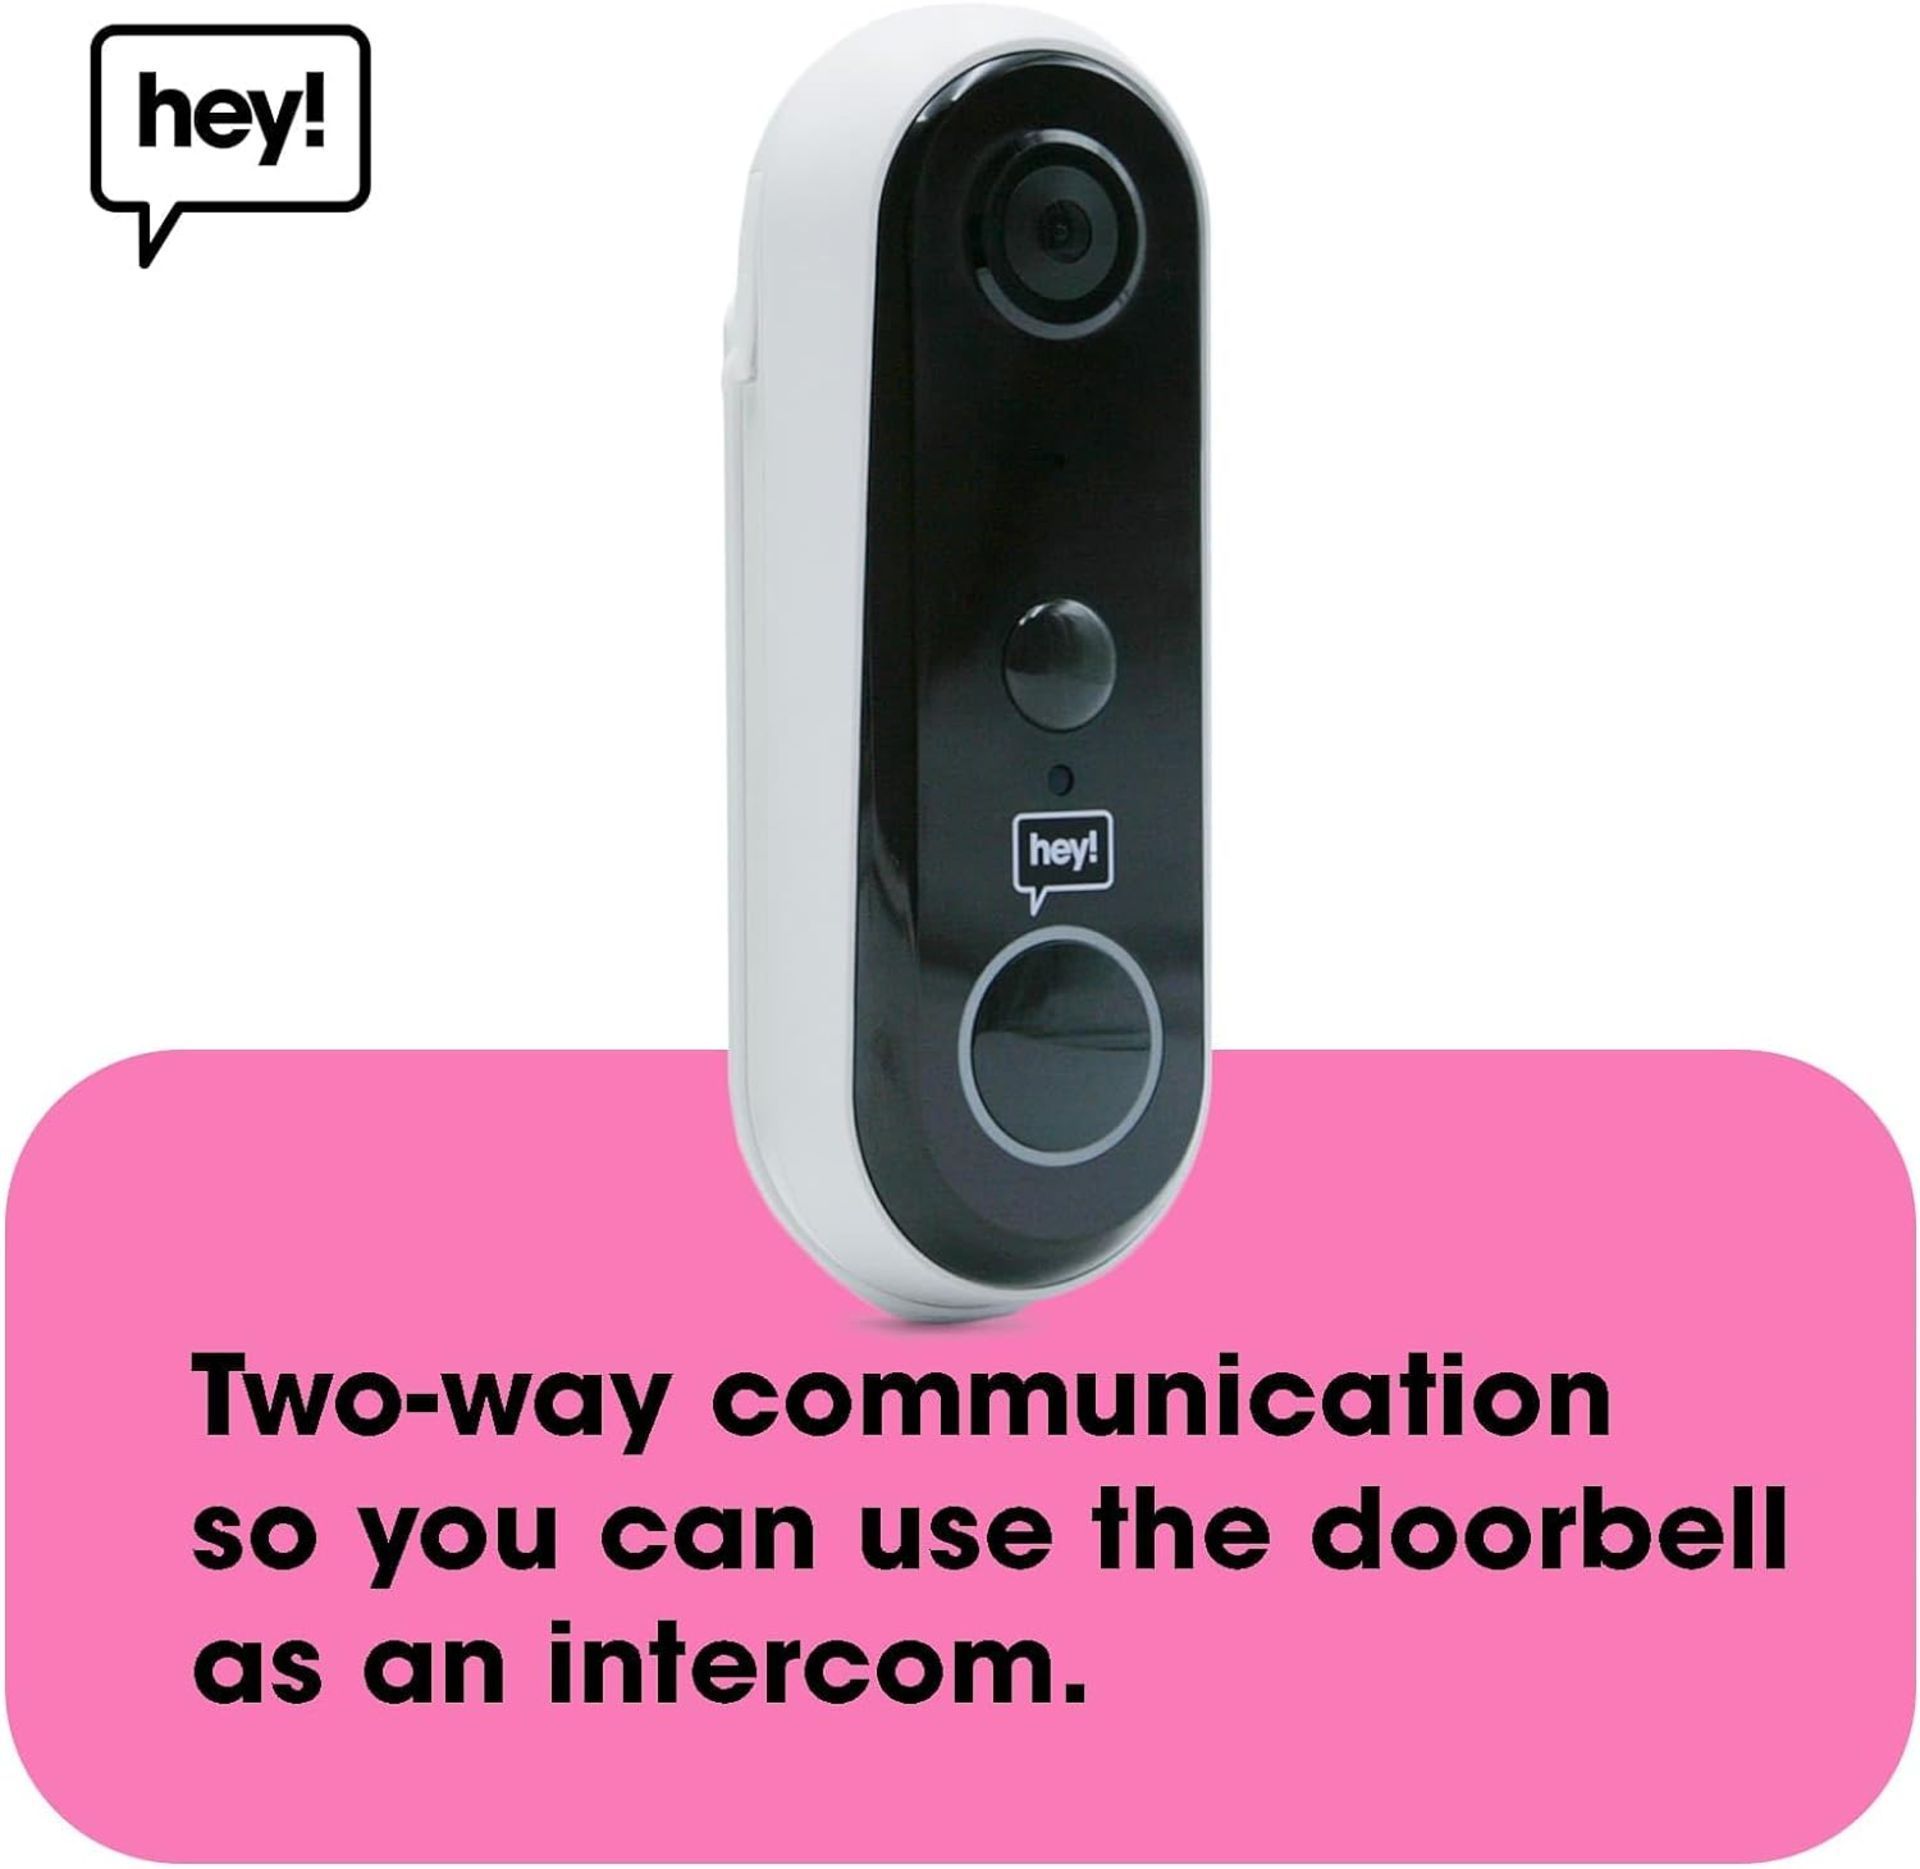 TRADE LOT 5 X NEW & BOXED HEY! SMART Wireless Video Doorbell. RRP £79.99 EACH. Wifi Doorbell - Image 5 of 6